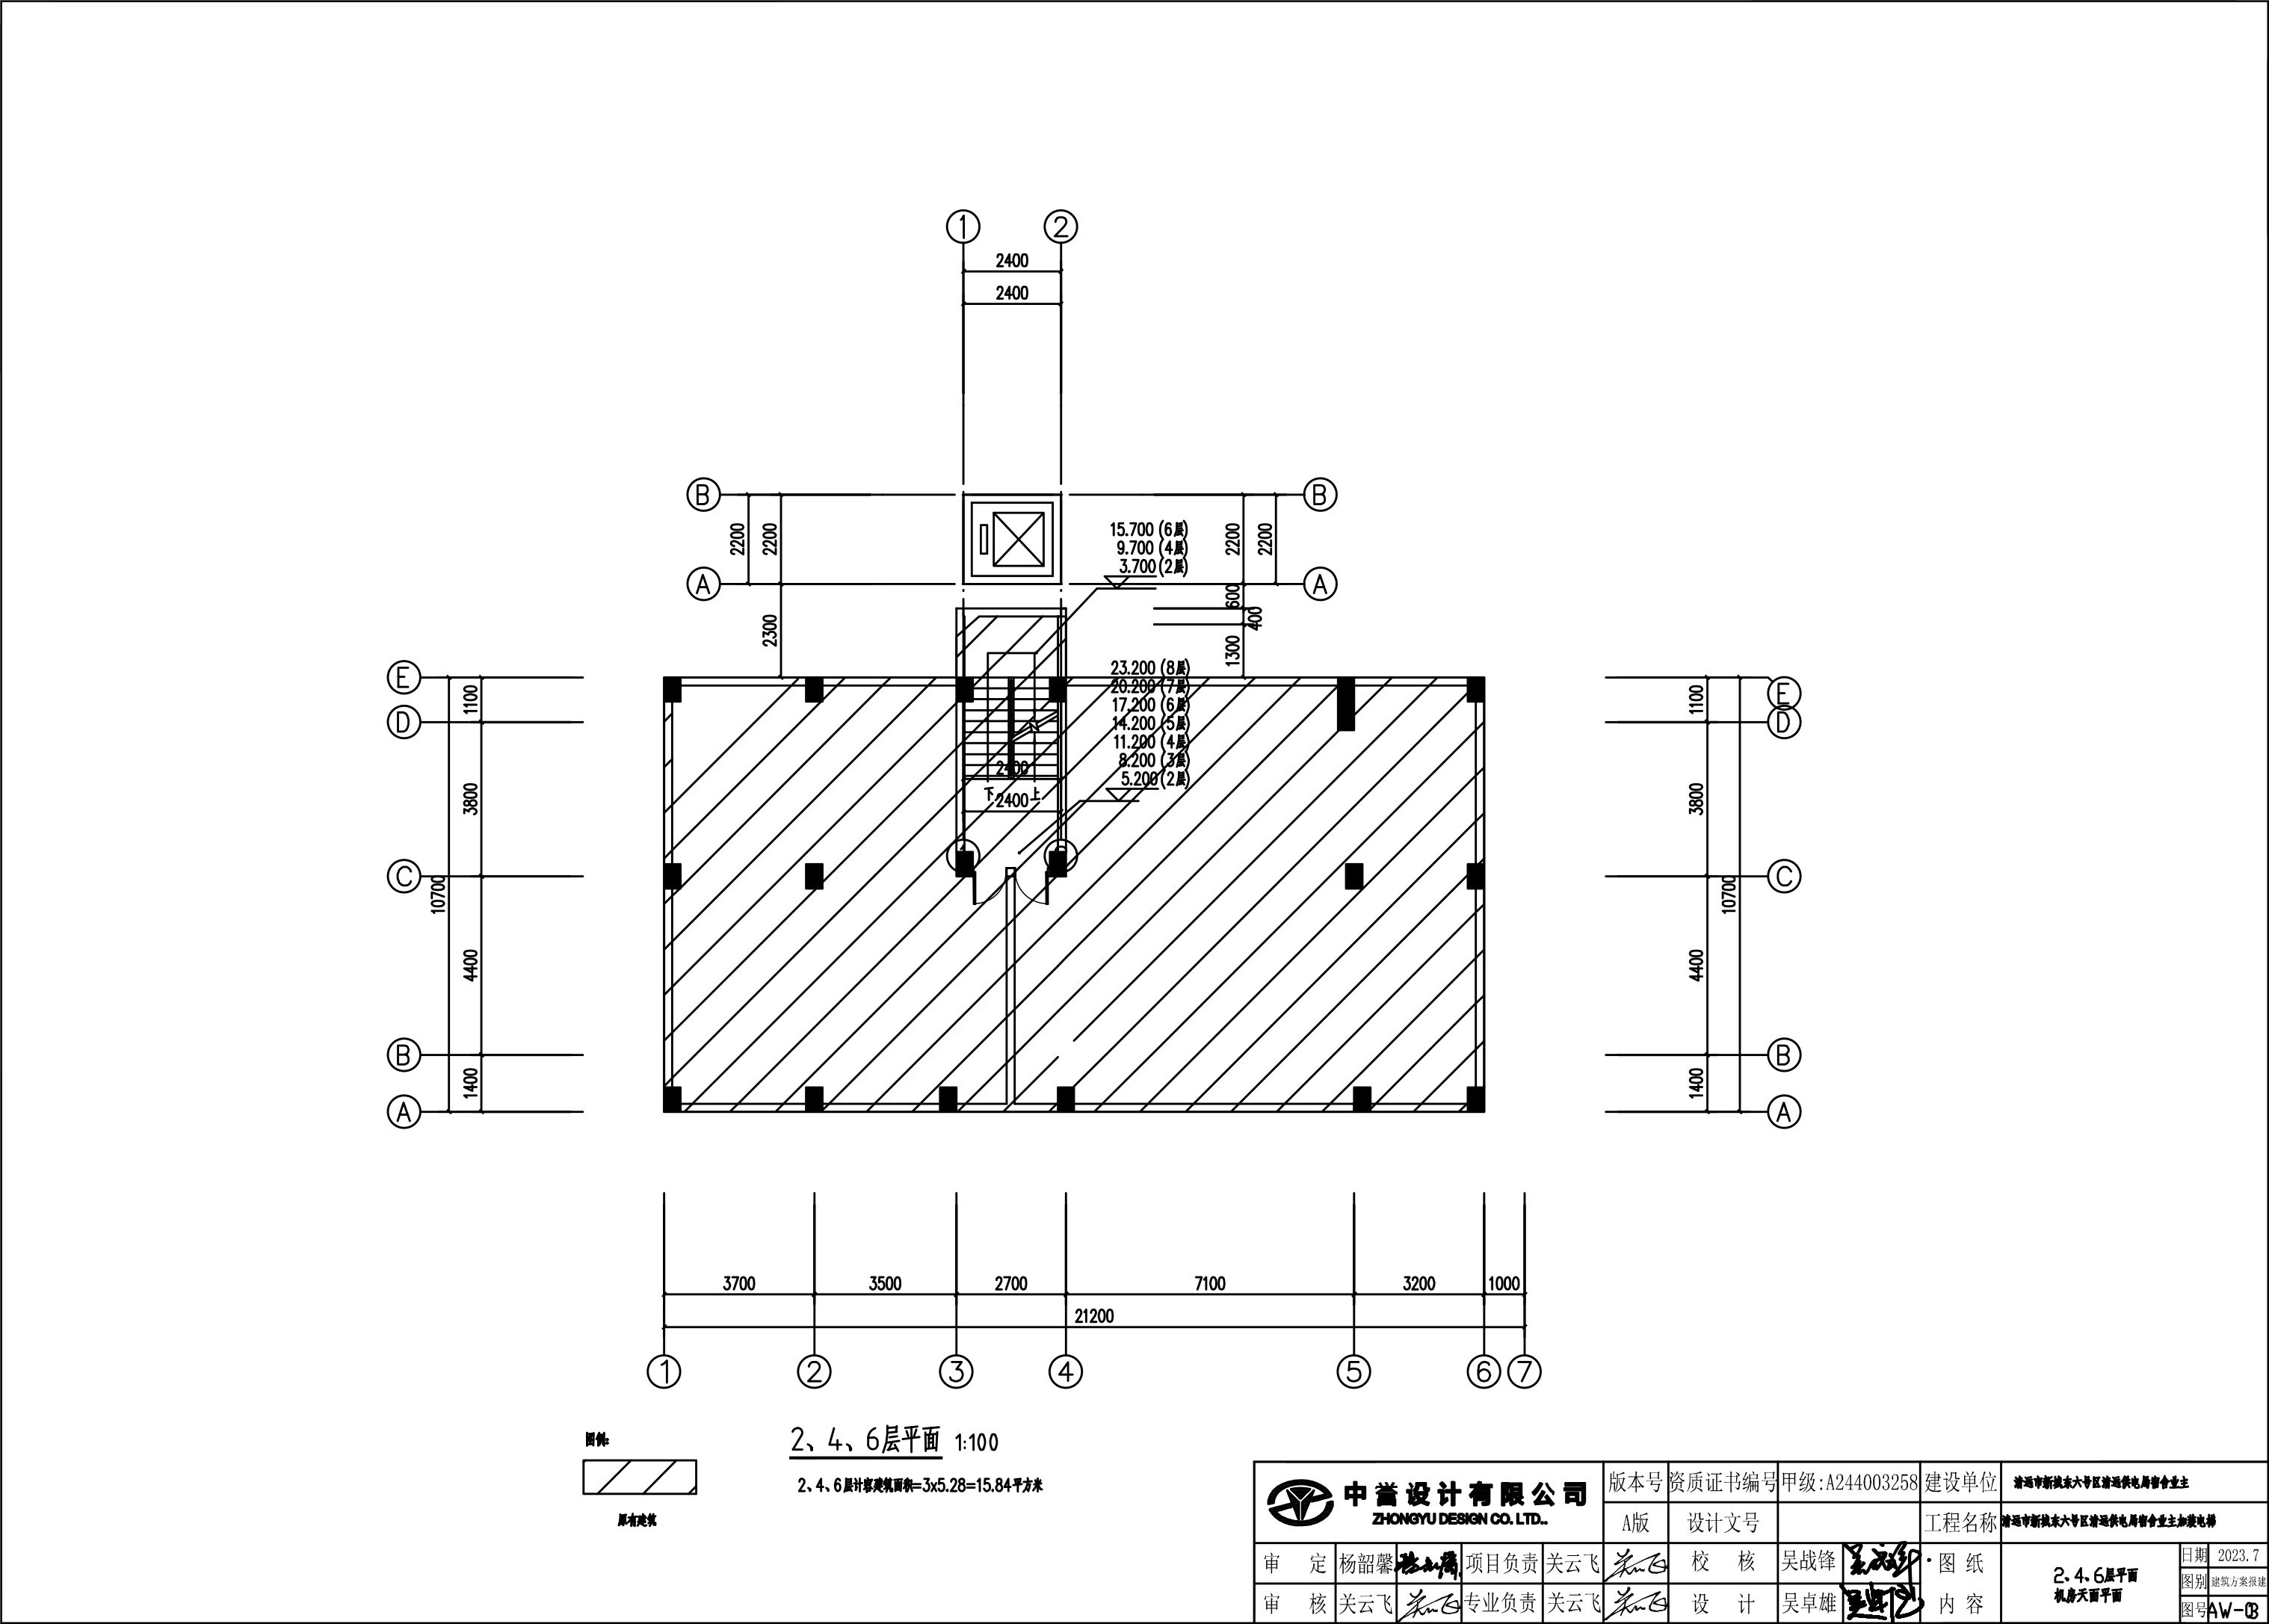 新城清远供电局宿舍电梯建筑图2-4-6层 .jpg